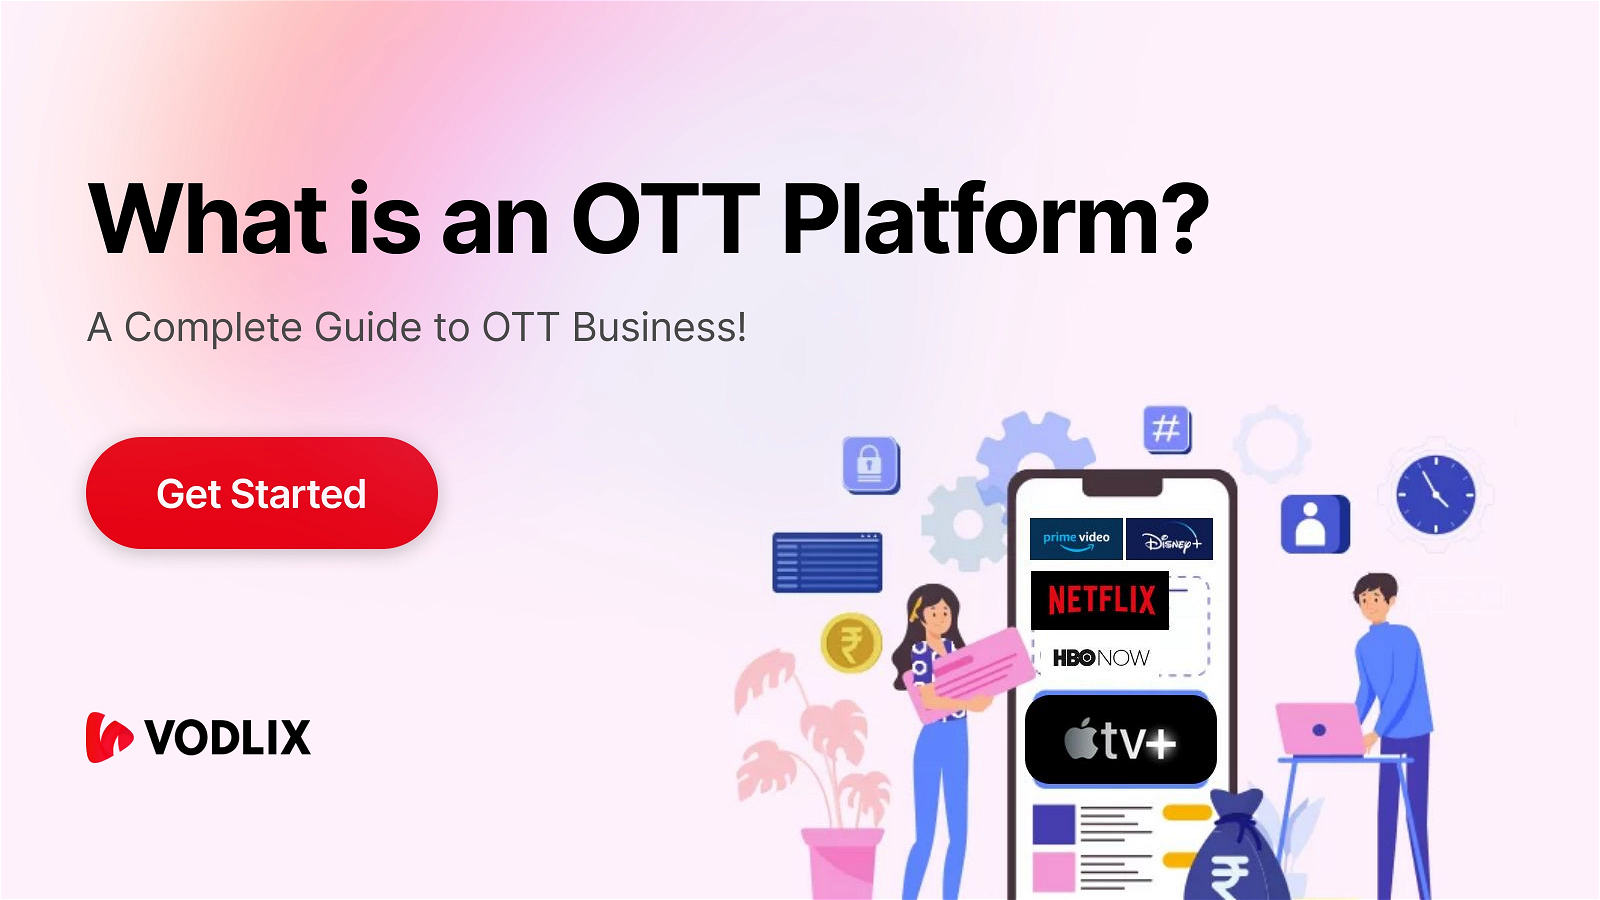 What is an OTT Platform?